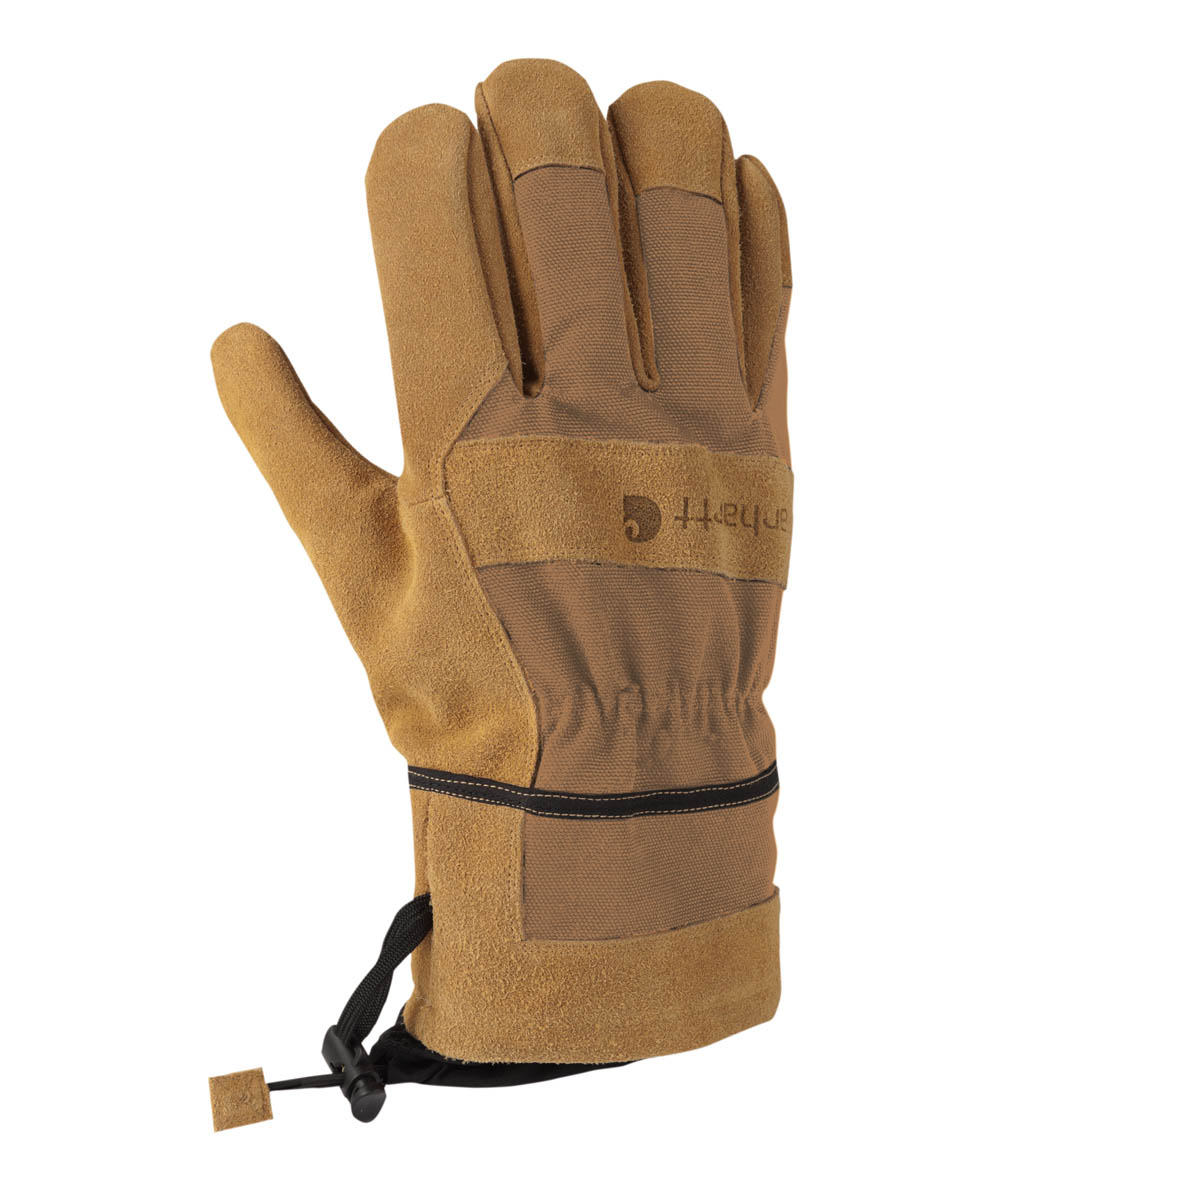 Carhartt Mens Dozer Glove Safety Cuff Gauntlet Discontinued Pricing